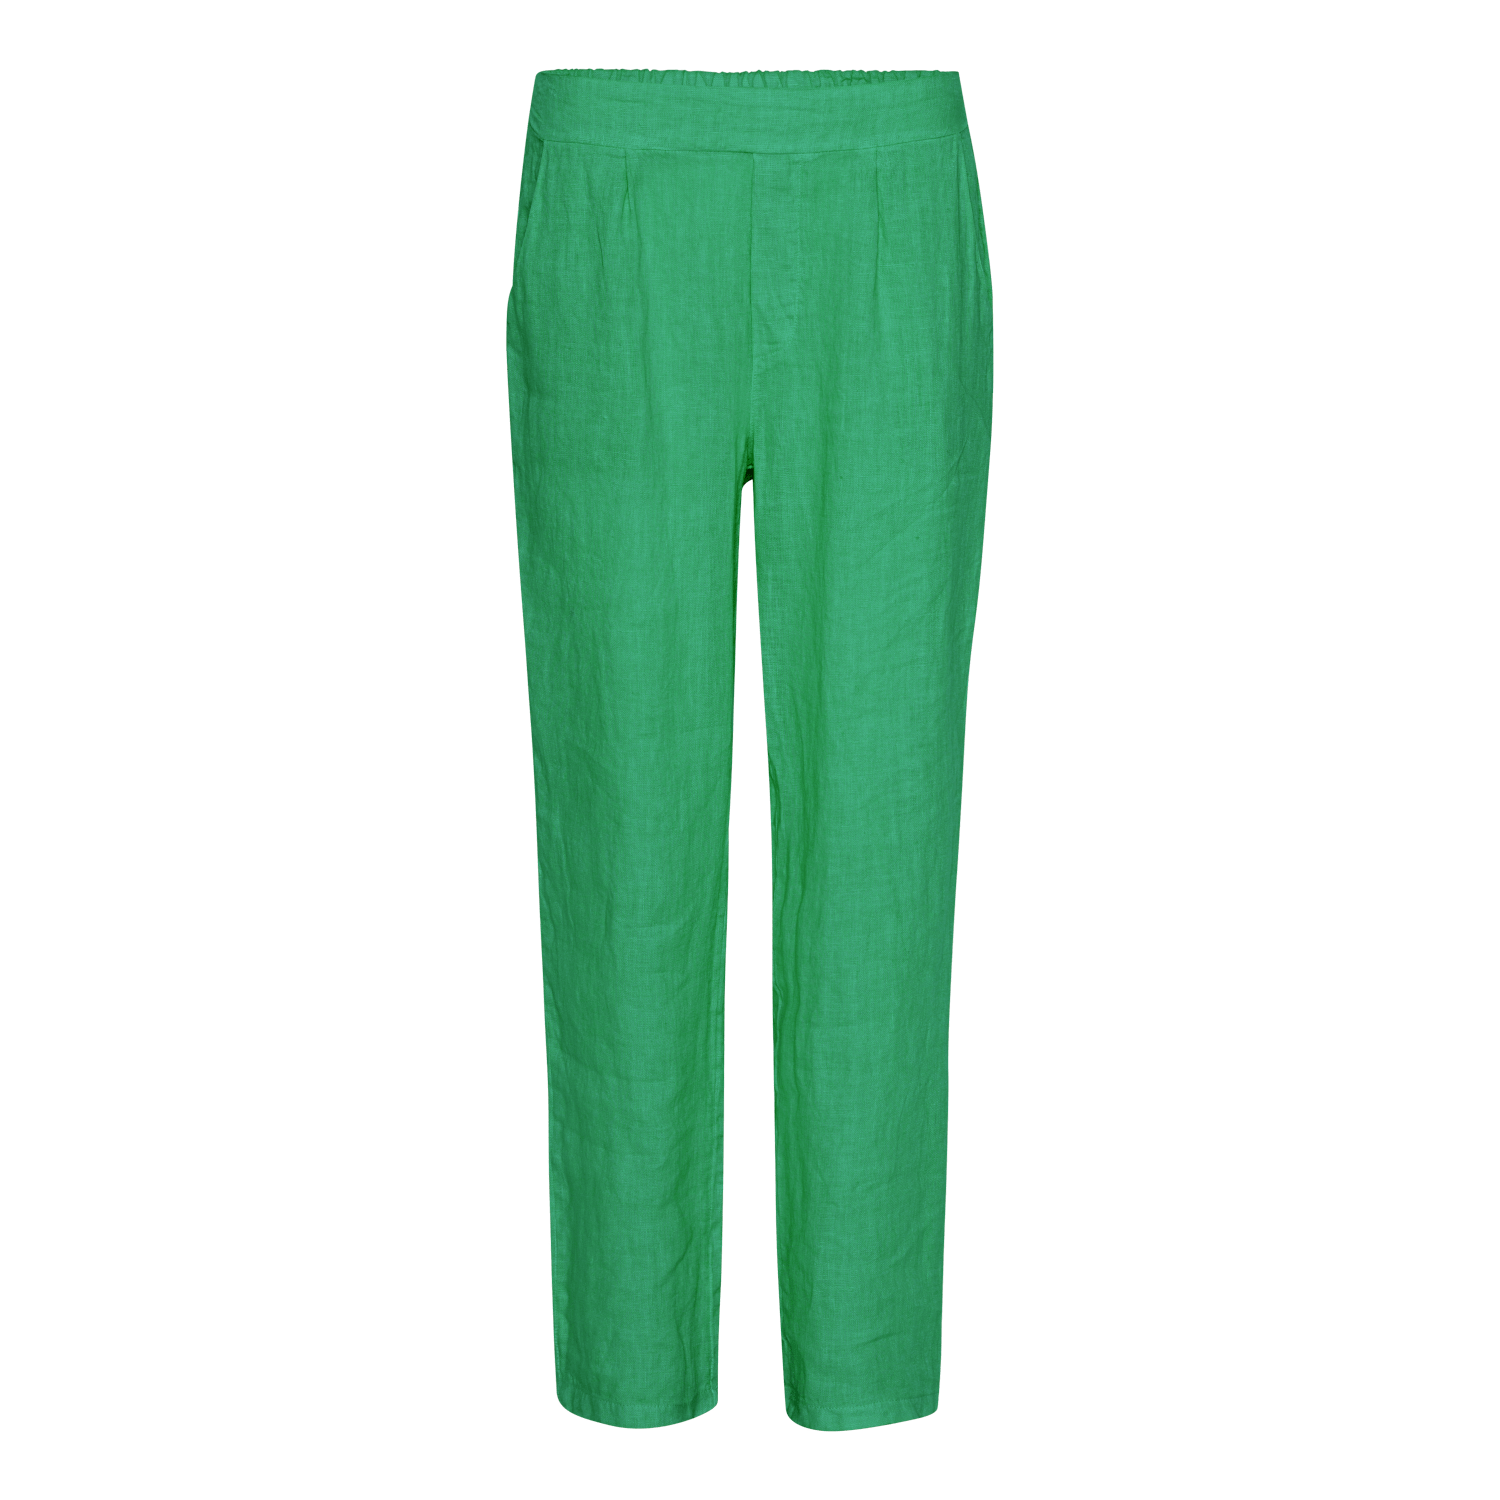 Livlige sommergrønne hørbukser til kvinder, designet med en nem elastisk talje, afslappede sidelommer og en afslappet pasform